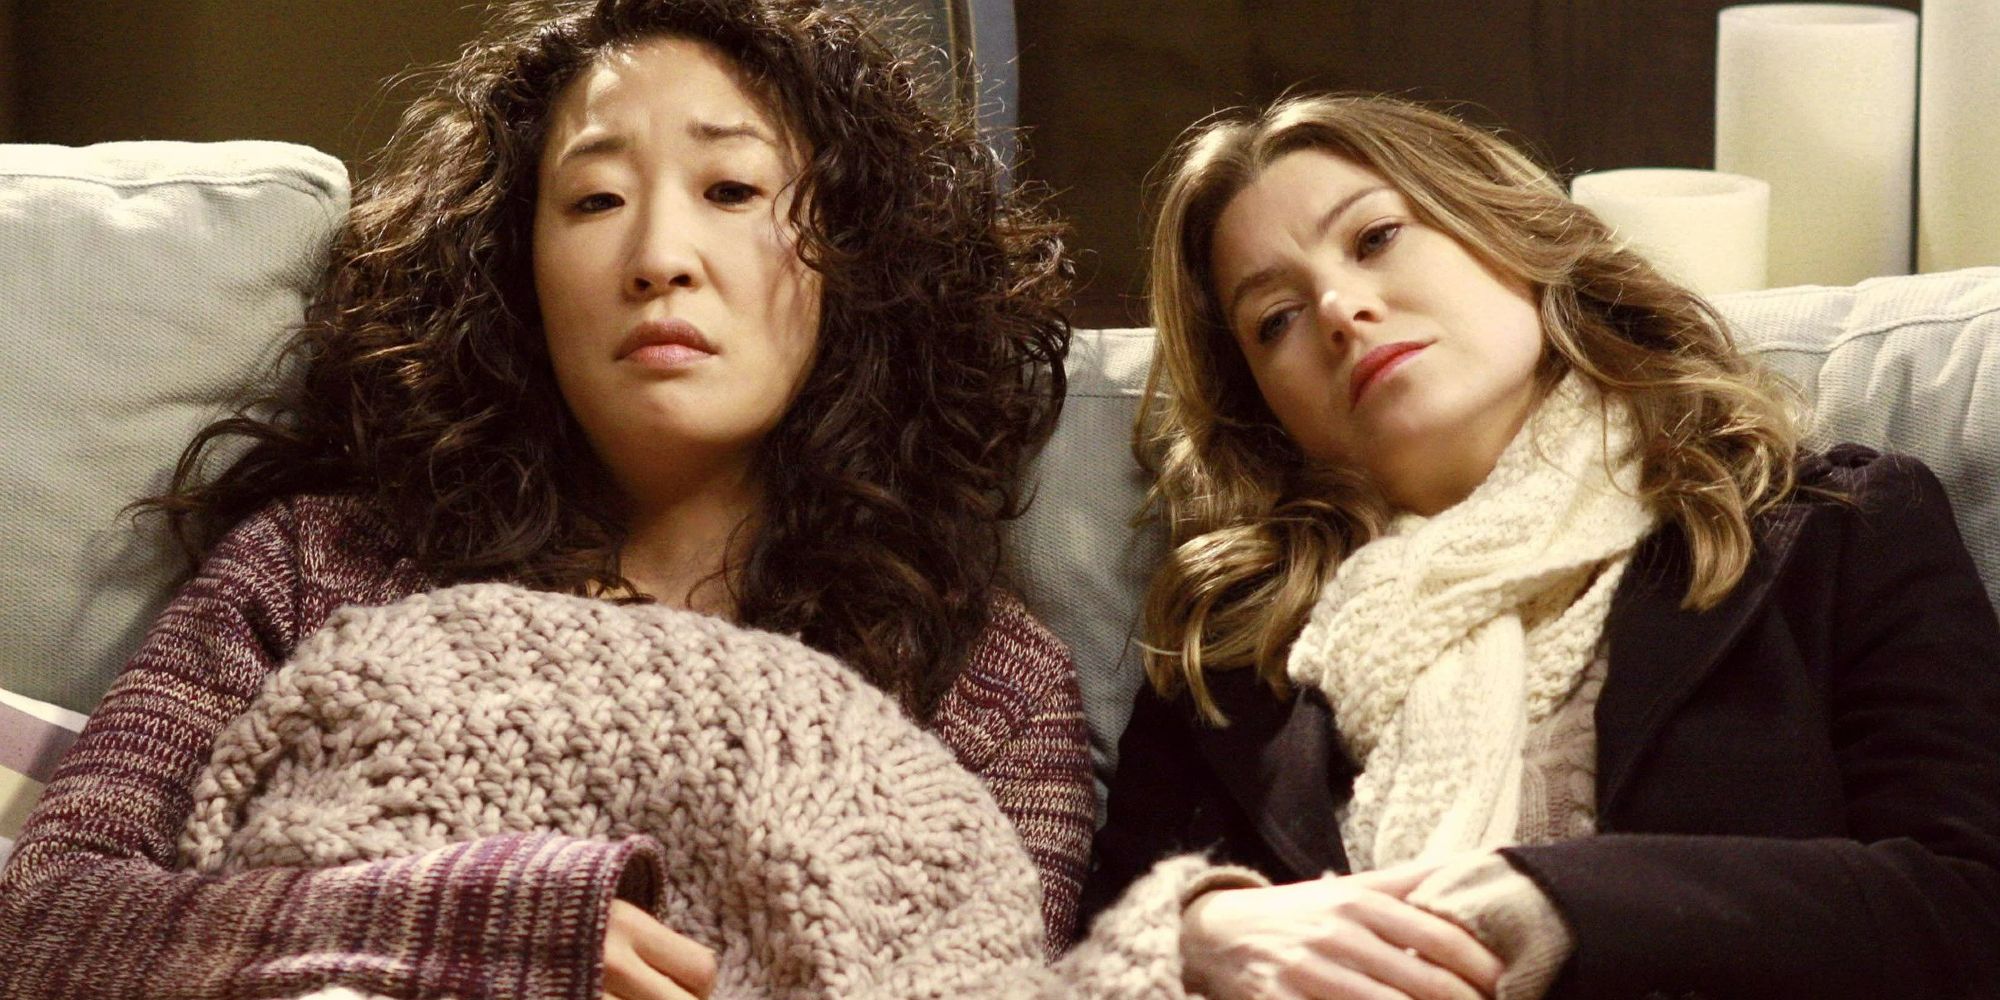 Cristina und Meredith sehen in Grey's Anatomy traurig aus